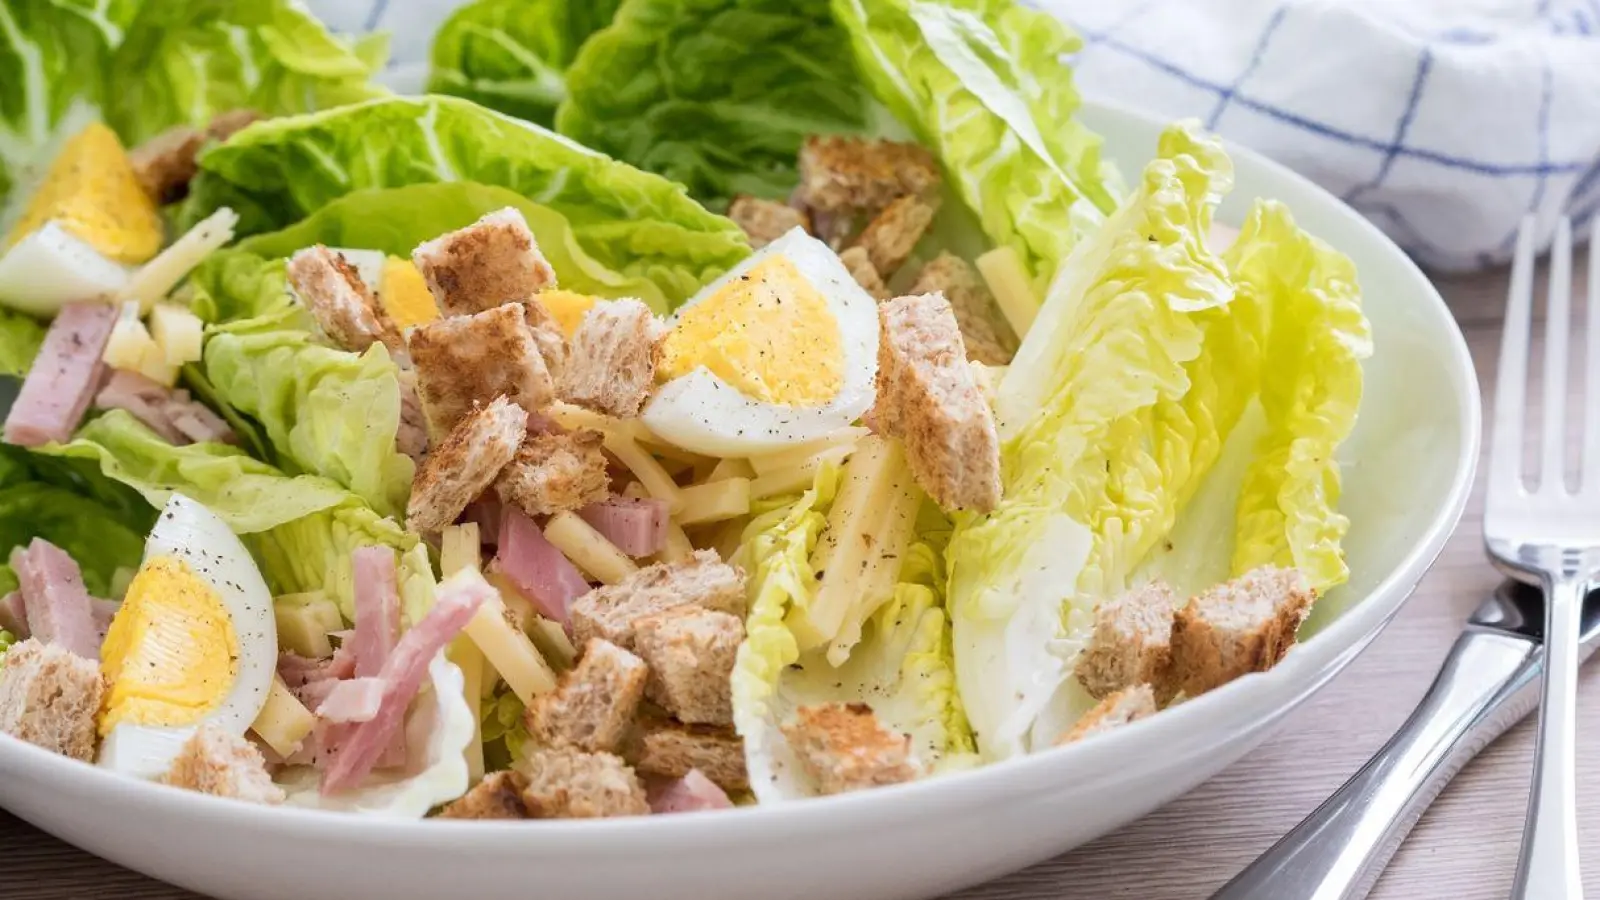 Brot sollte kein Entenfutter sein, sondern landet besser in einem Salat als Croutons. Diese verleihen eine geschmackvolle Note. (Foto: Christin Klose/dpa-tmn/dpa)